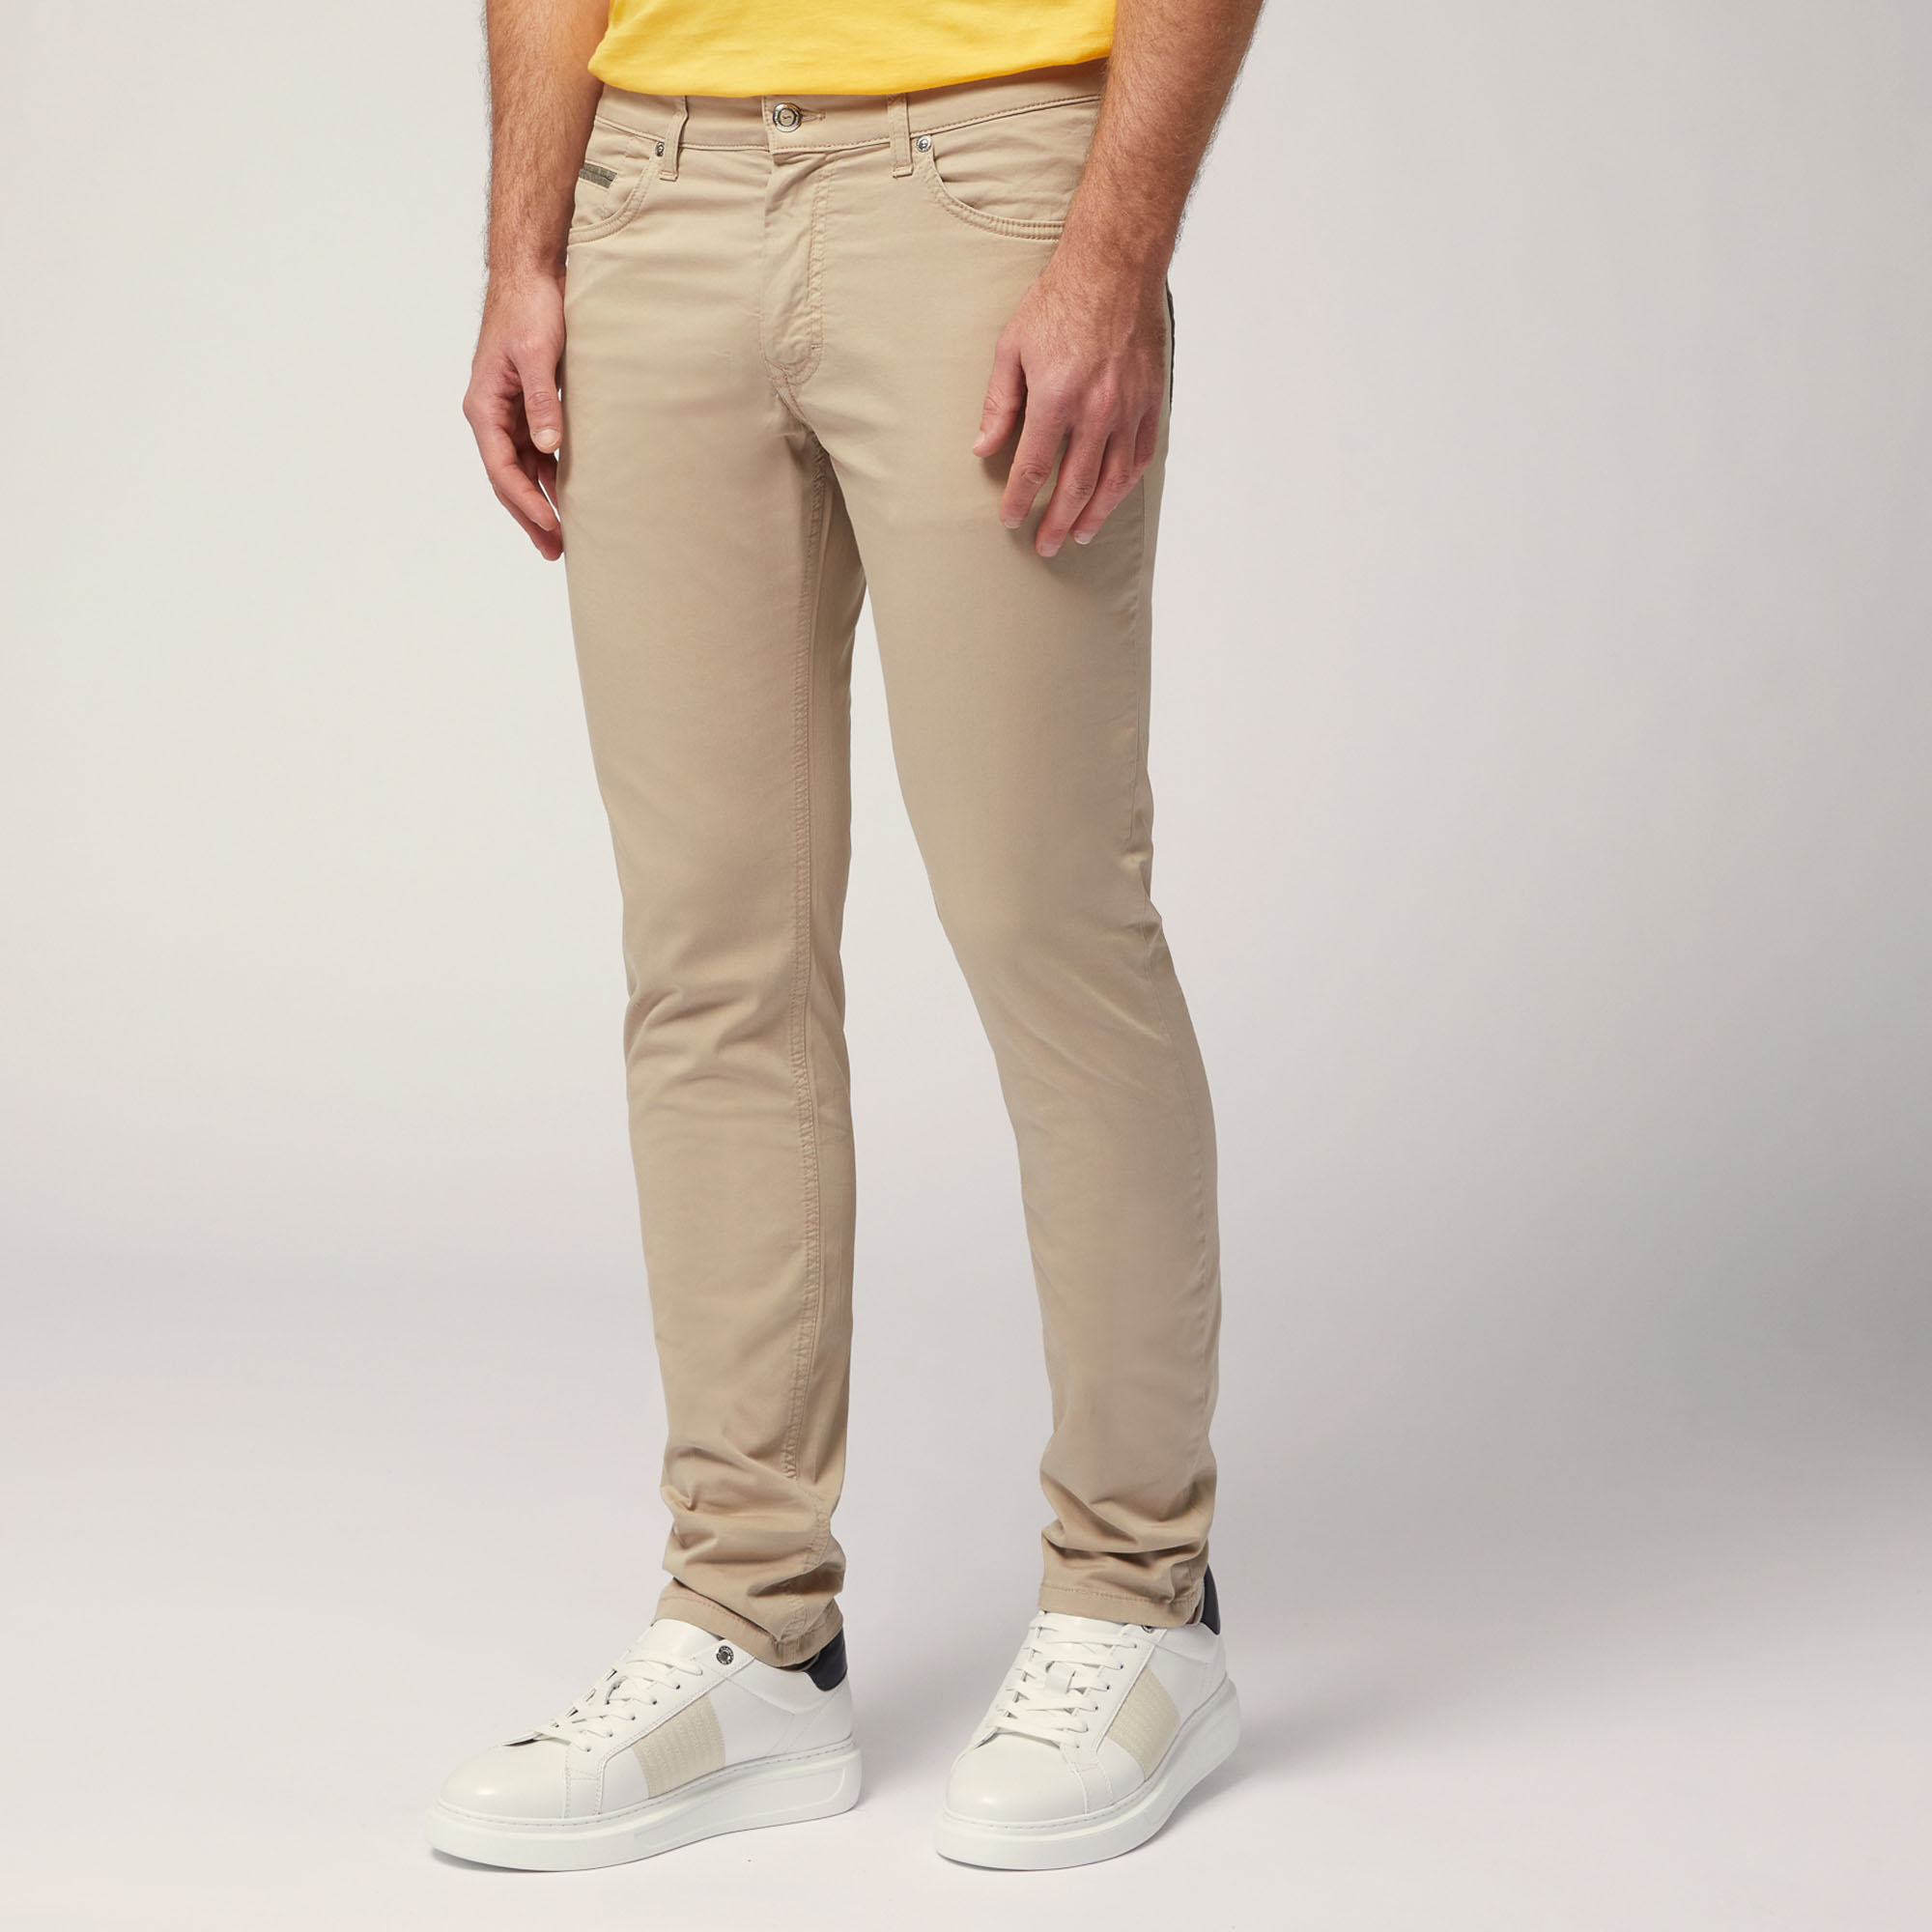 Khaki Solid Casual Bottom - Selling Fast at Pantaloons.com